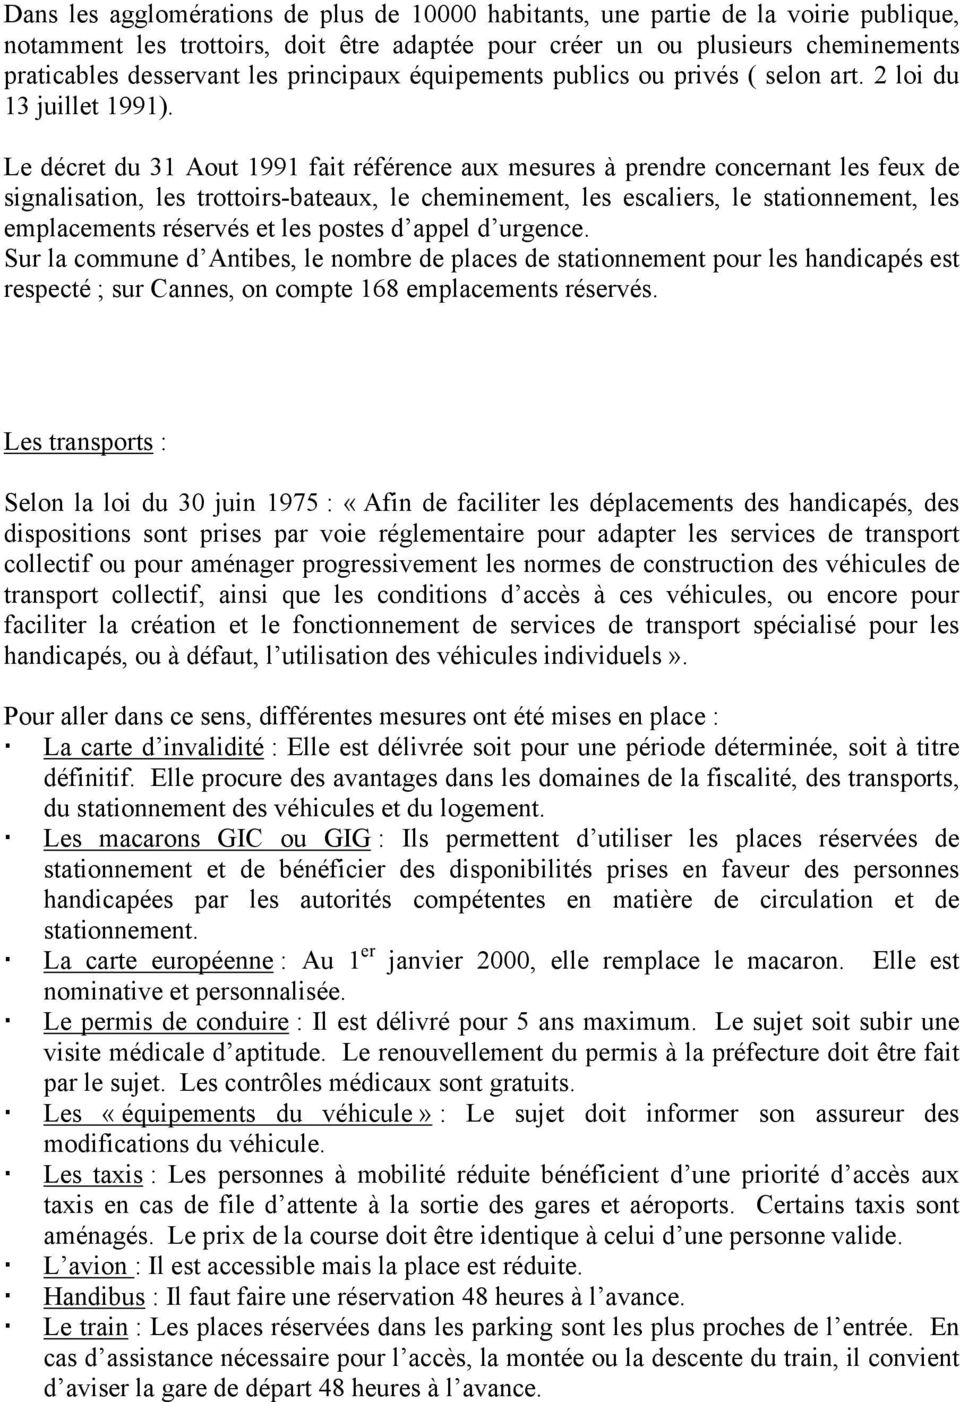 Le décret du 31 Aout 1991 fait référence aux mesures à prendre concernant les feux de signalisation, les trottoirs-bateaux, le cheminement, les escaliers, le stationnement, les emplacements réservés